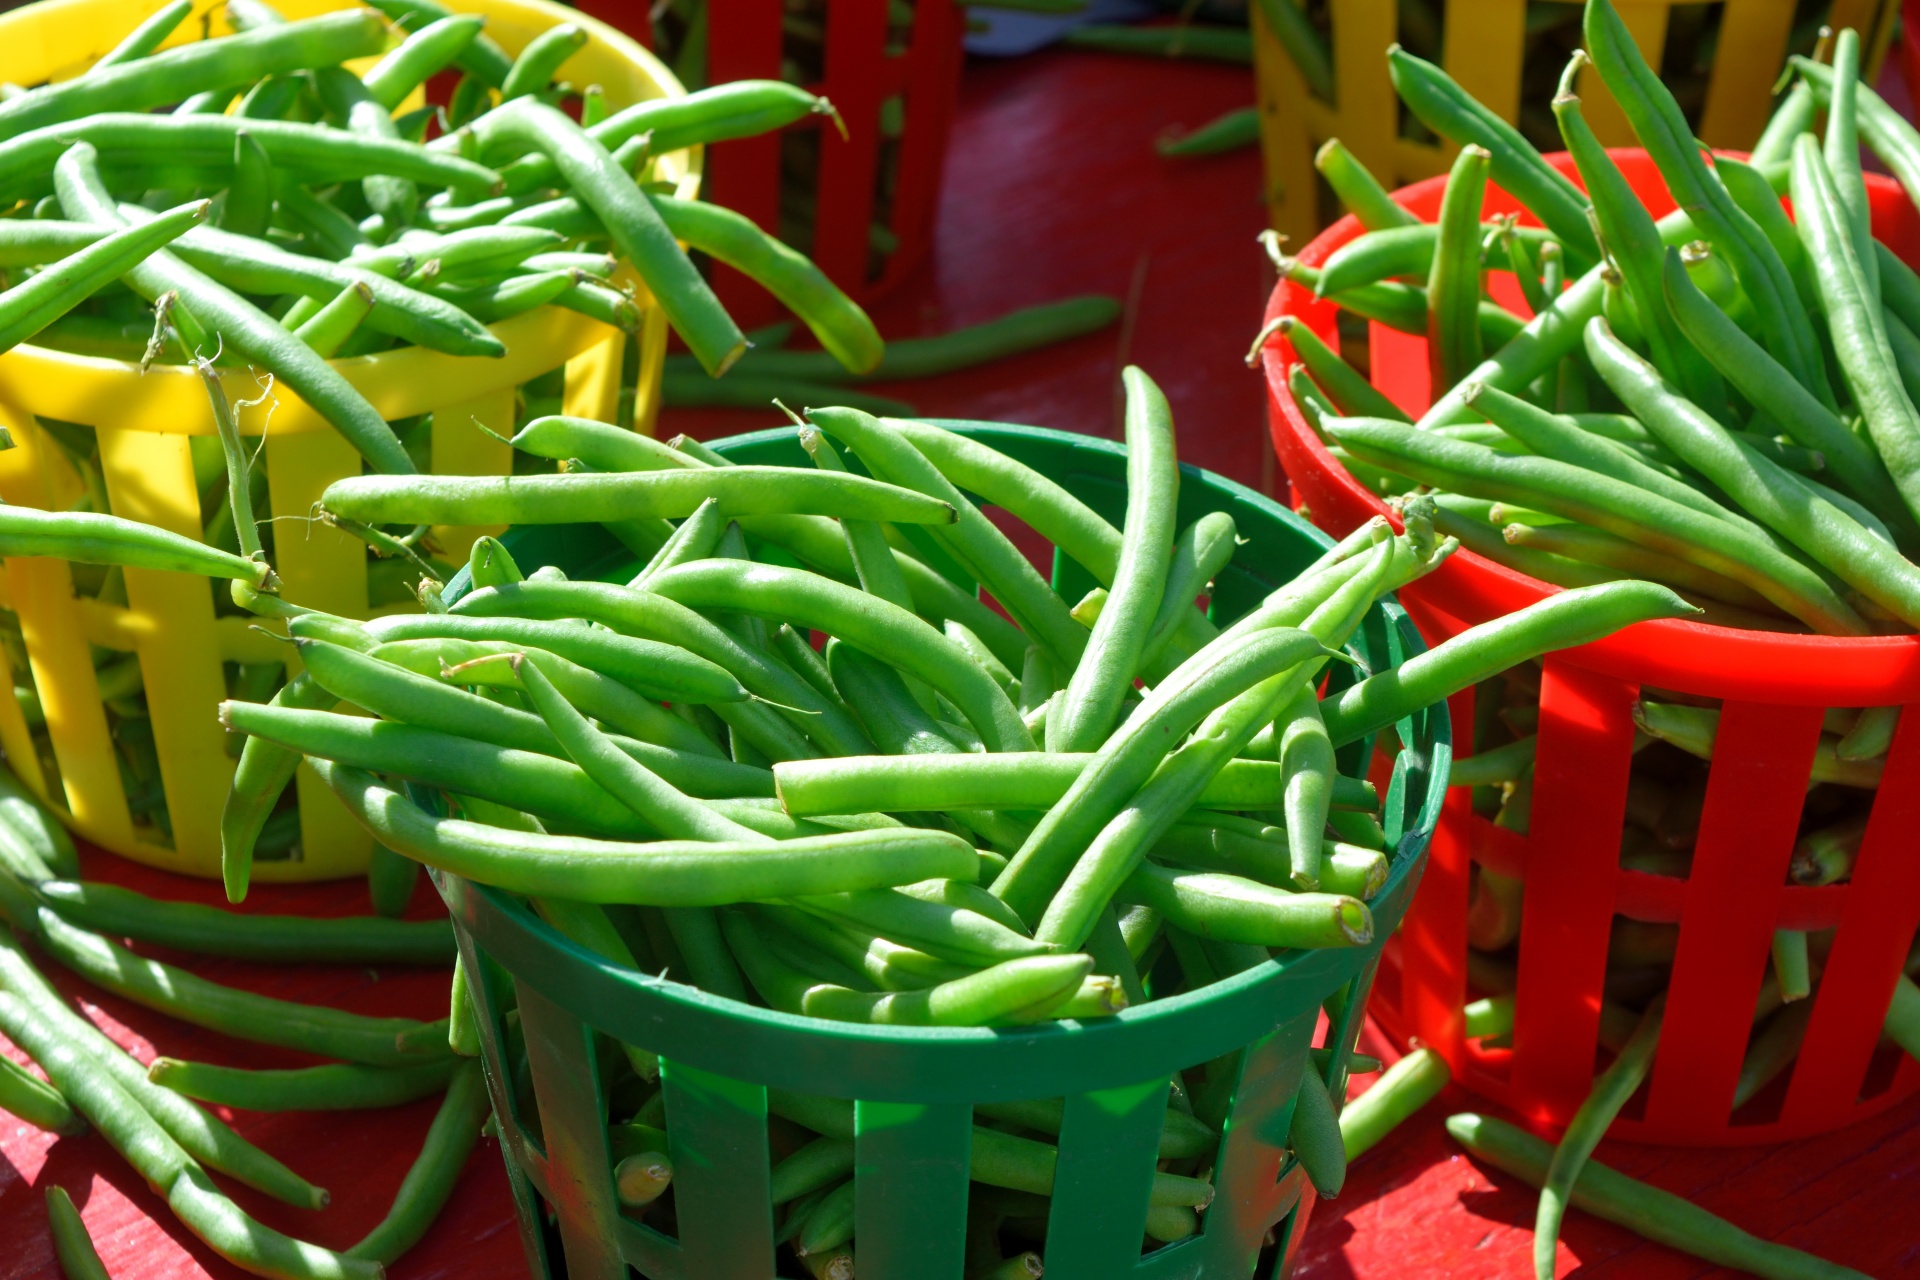 Szechuan Green String Beans